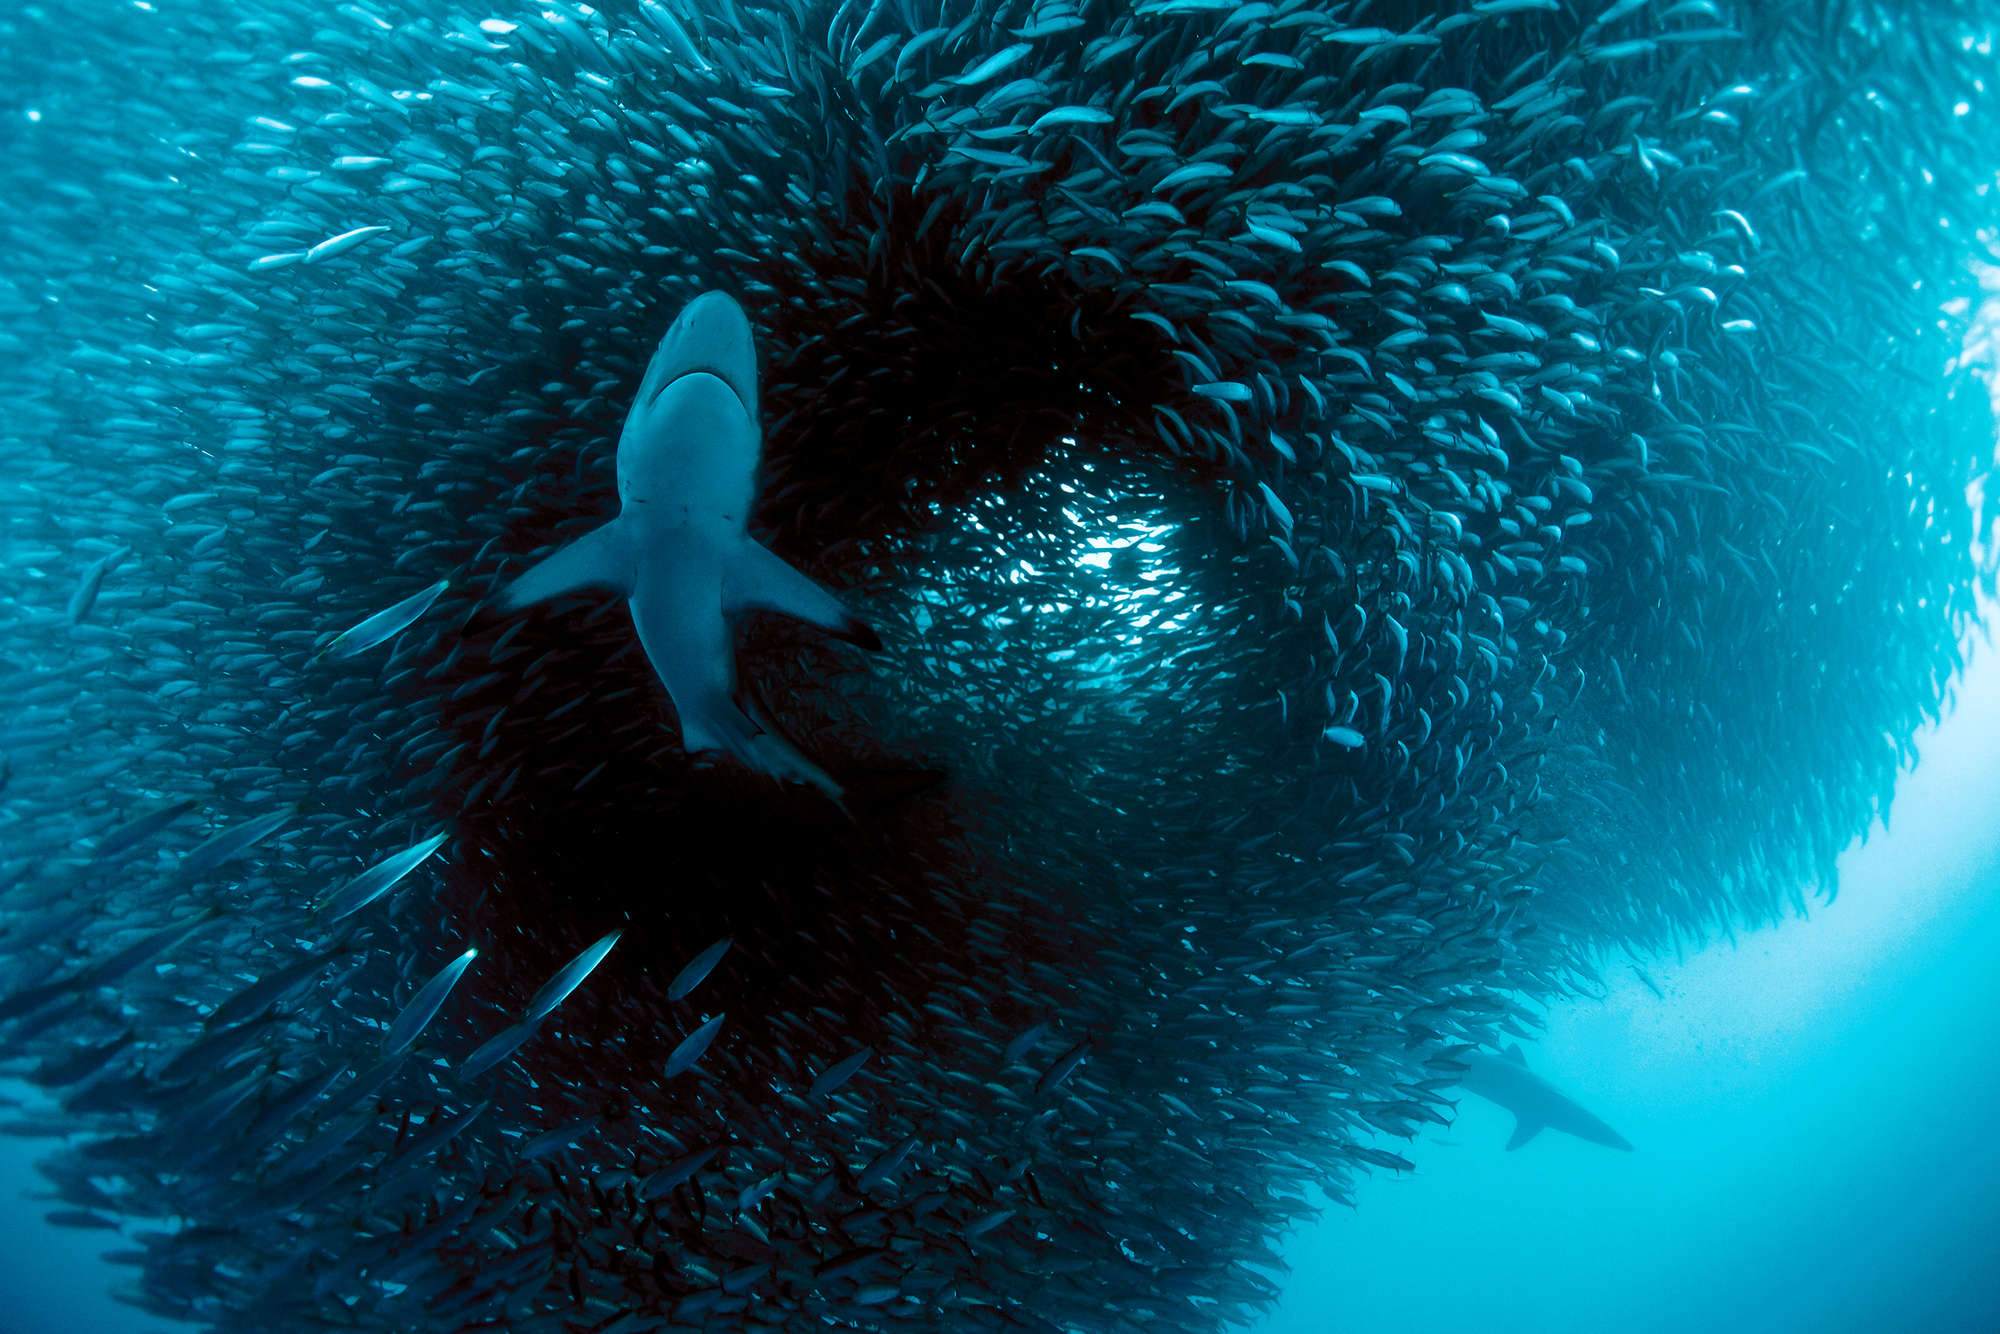             Meeres Fototapete mit Hai beim jagen auf Strukturvlies
        